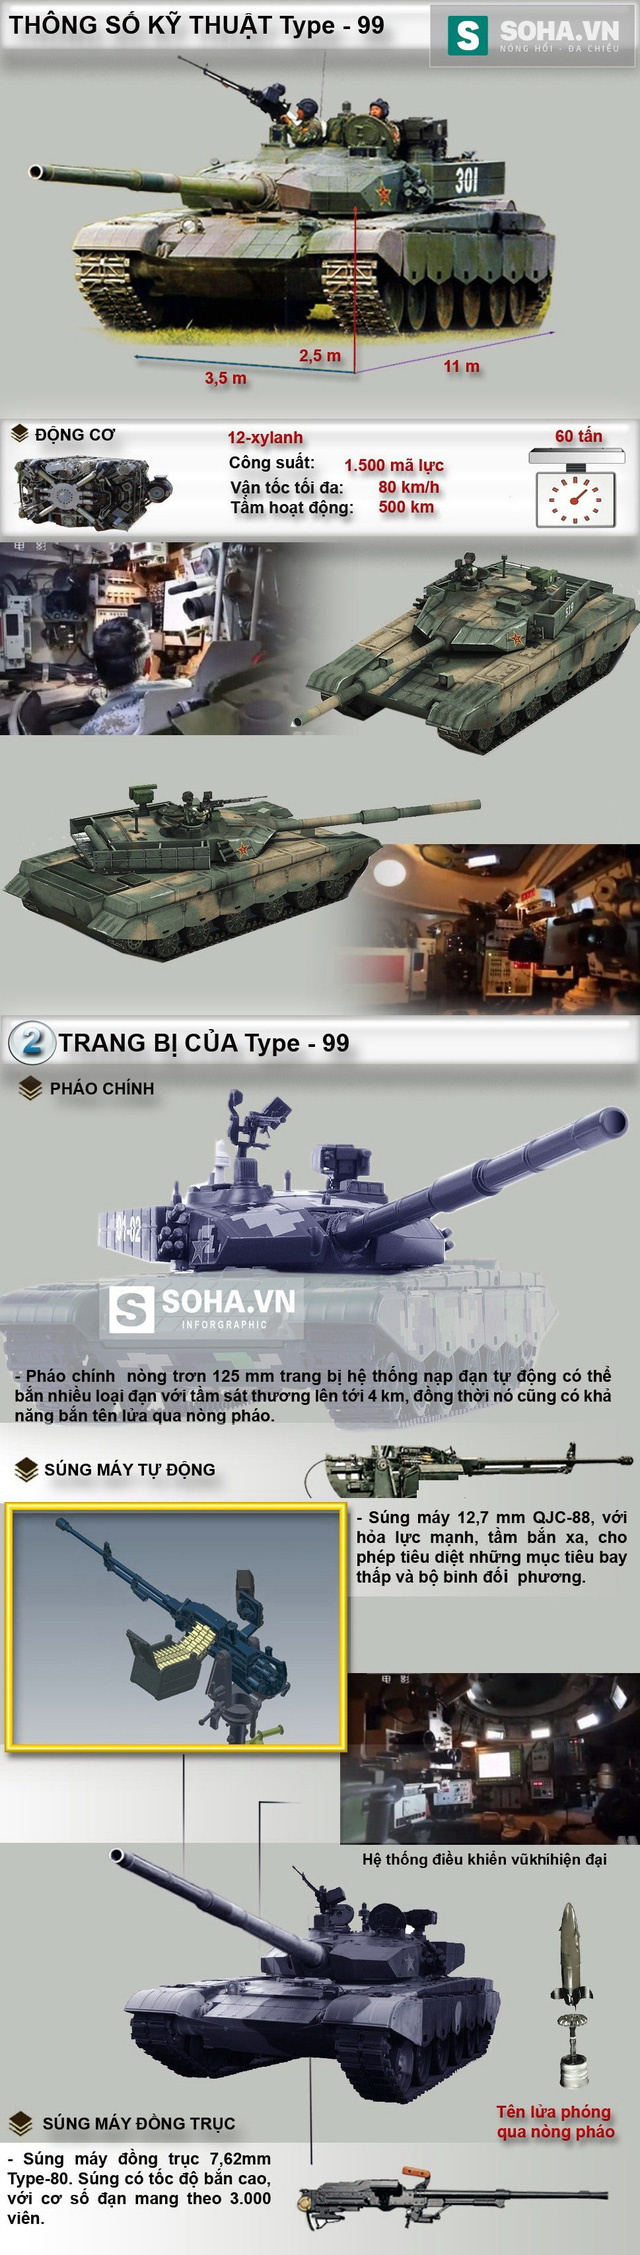 Đồ họa hình ảnh xe tăng Type-99 của Trung Quốc. Ảnh: Trí Thức Trẻ 